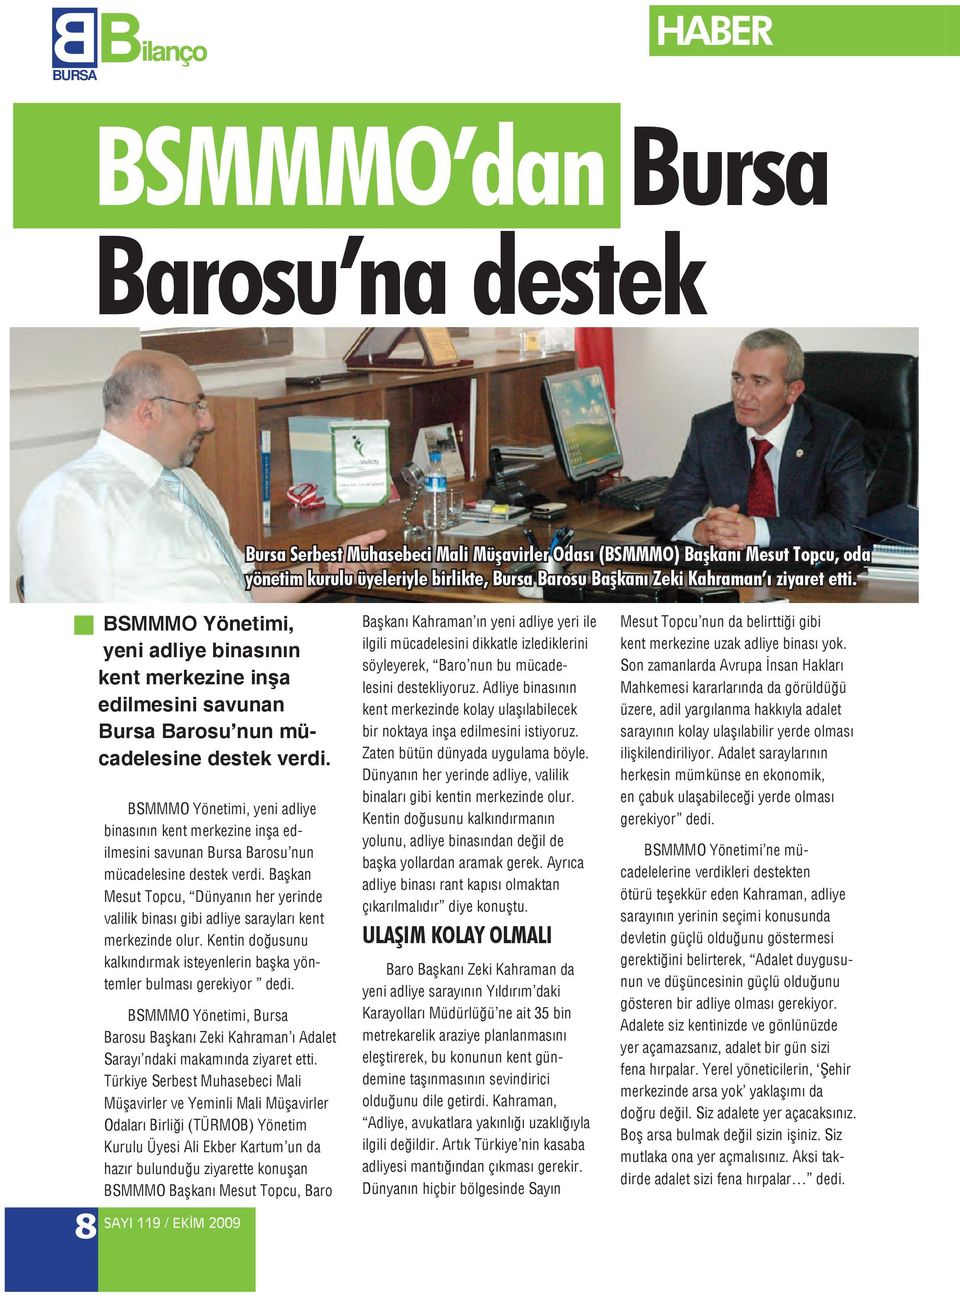 BSMMMO Yönetimi, yeni adliye binasının kent merkezine inşa edilmesini savunan Bursa Barosu nun mücadelesine destek verdi.